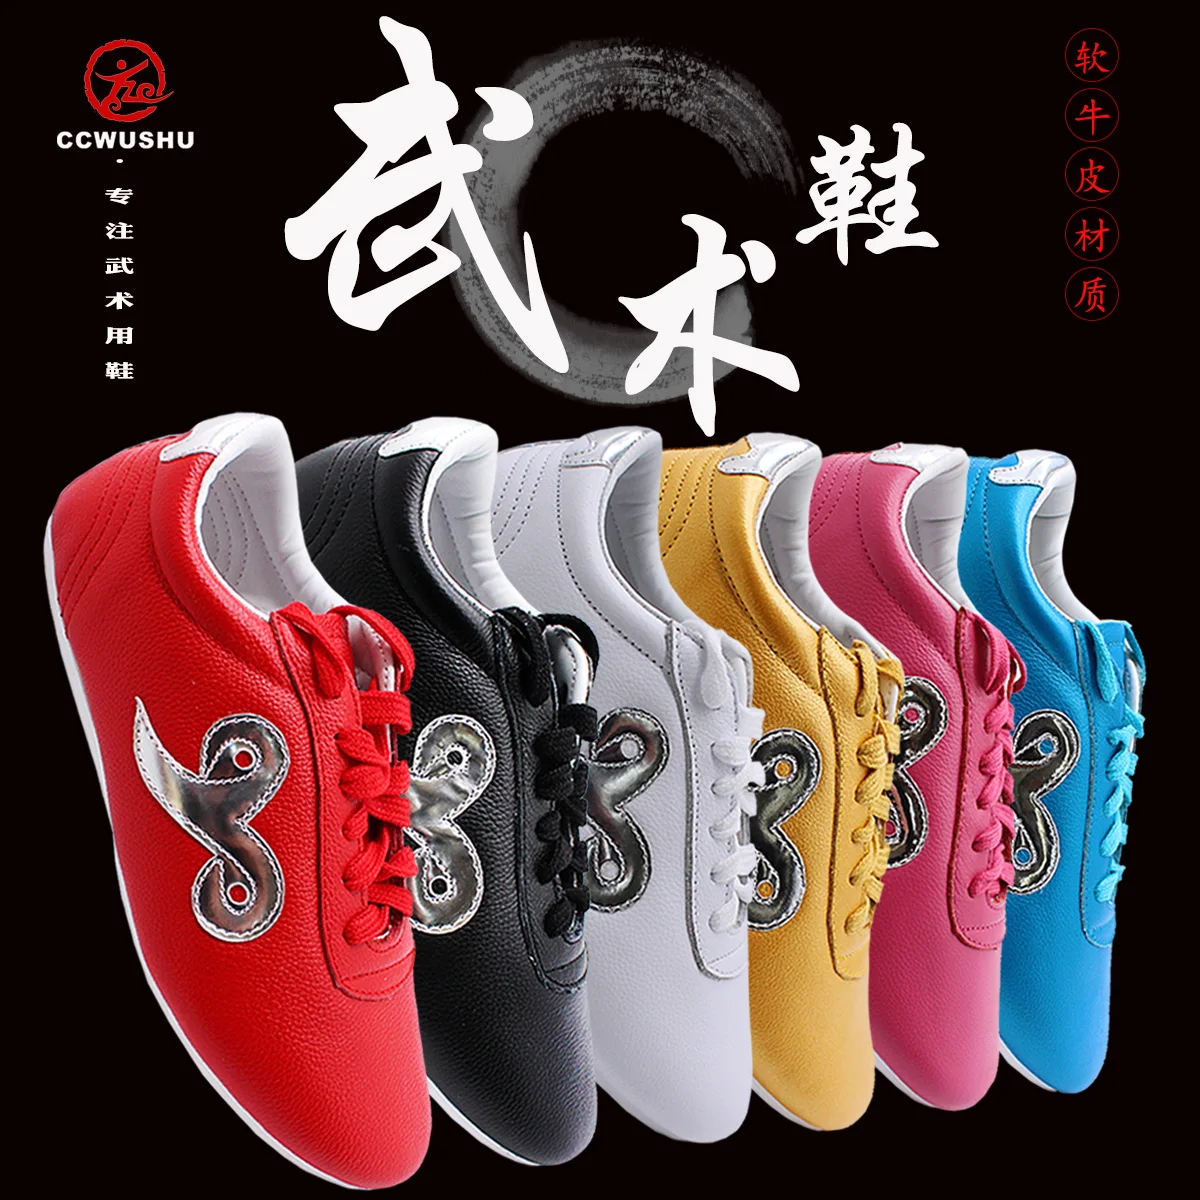 wushu shoes chinese wushu kungfu supply ccwushu taichi taiji nanquan changquan shoes Martial Arts shoes